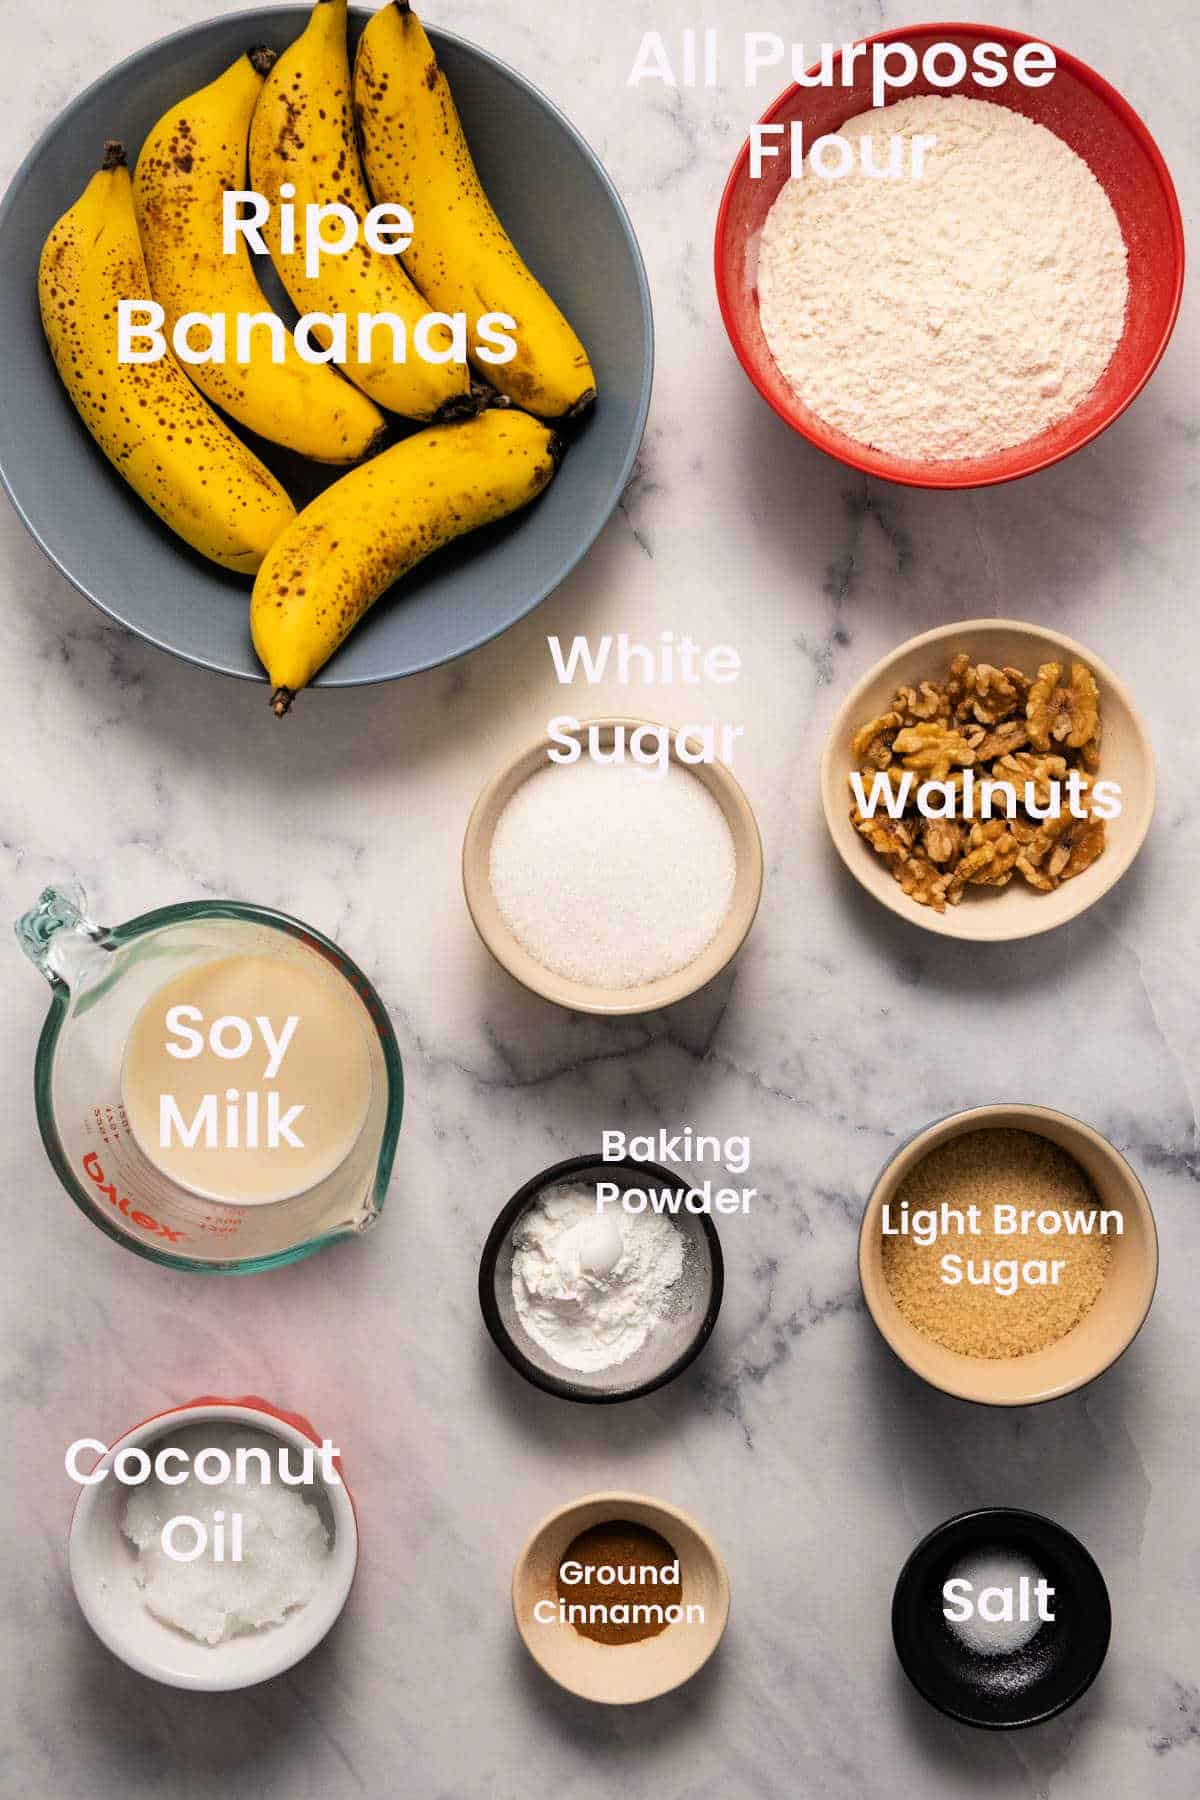 Ingredients to make vegan banana bread.